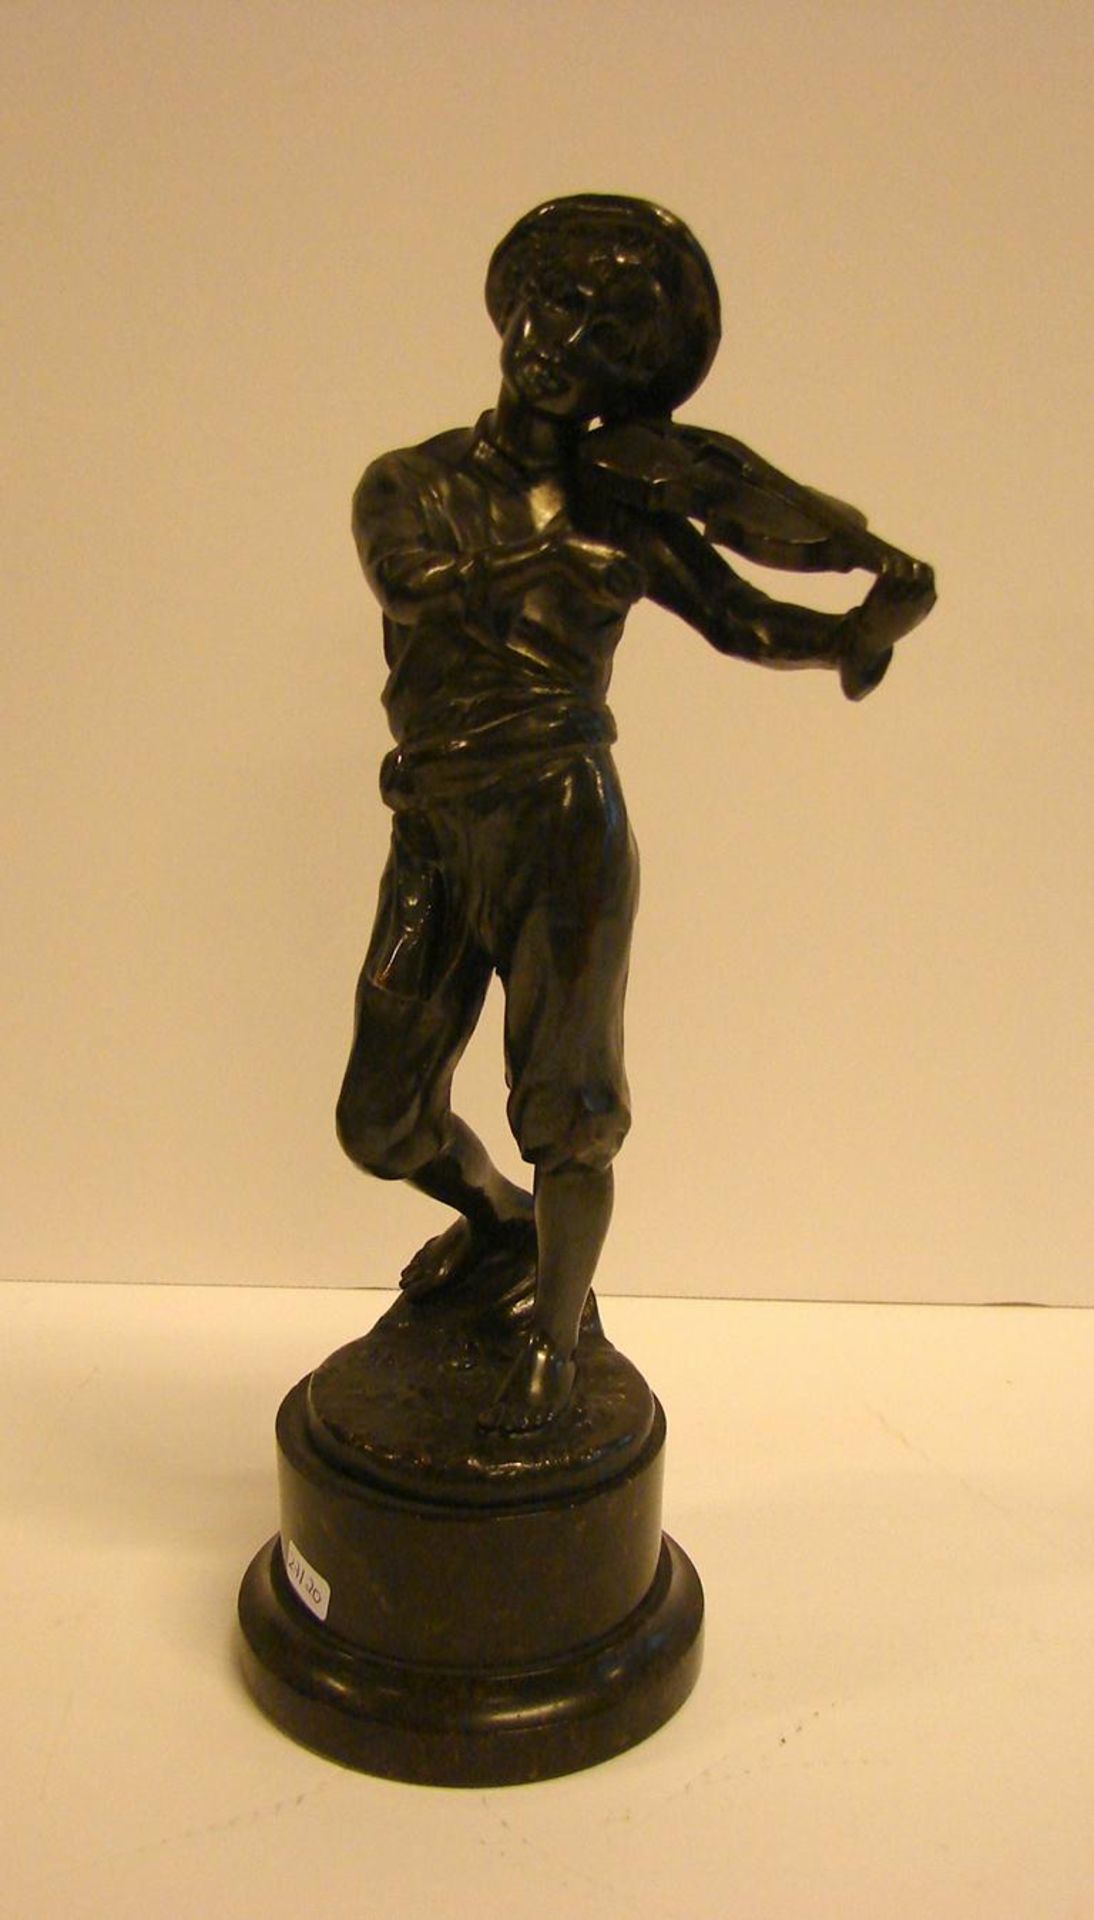 Bronze, "Geigenspielender Junge", auf Marmorsockel, ohne Signatur,H. ca. 26 cm, Geigenstab fehlt